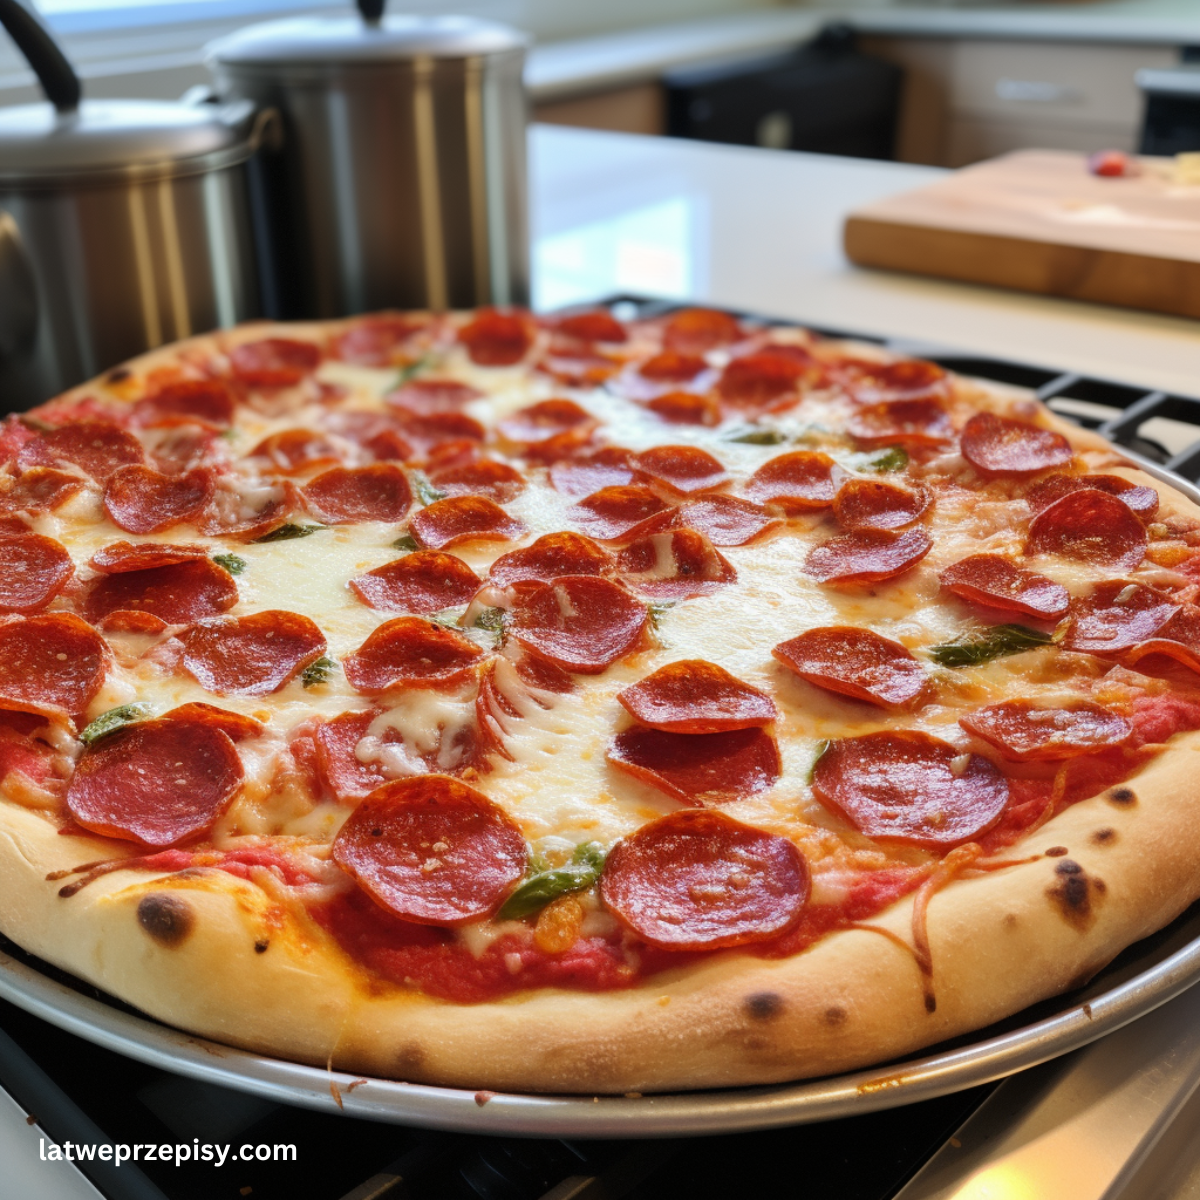 Domowa pizza pepperoni podana na platerze.